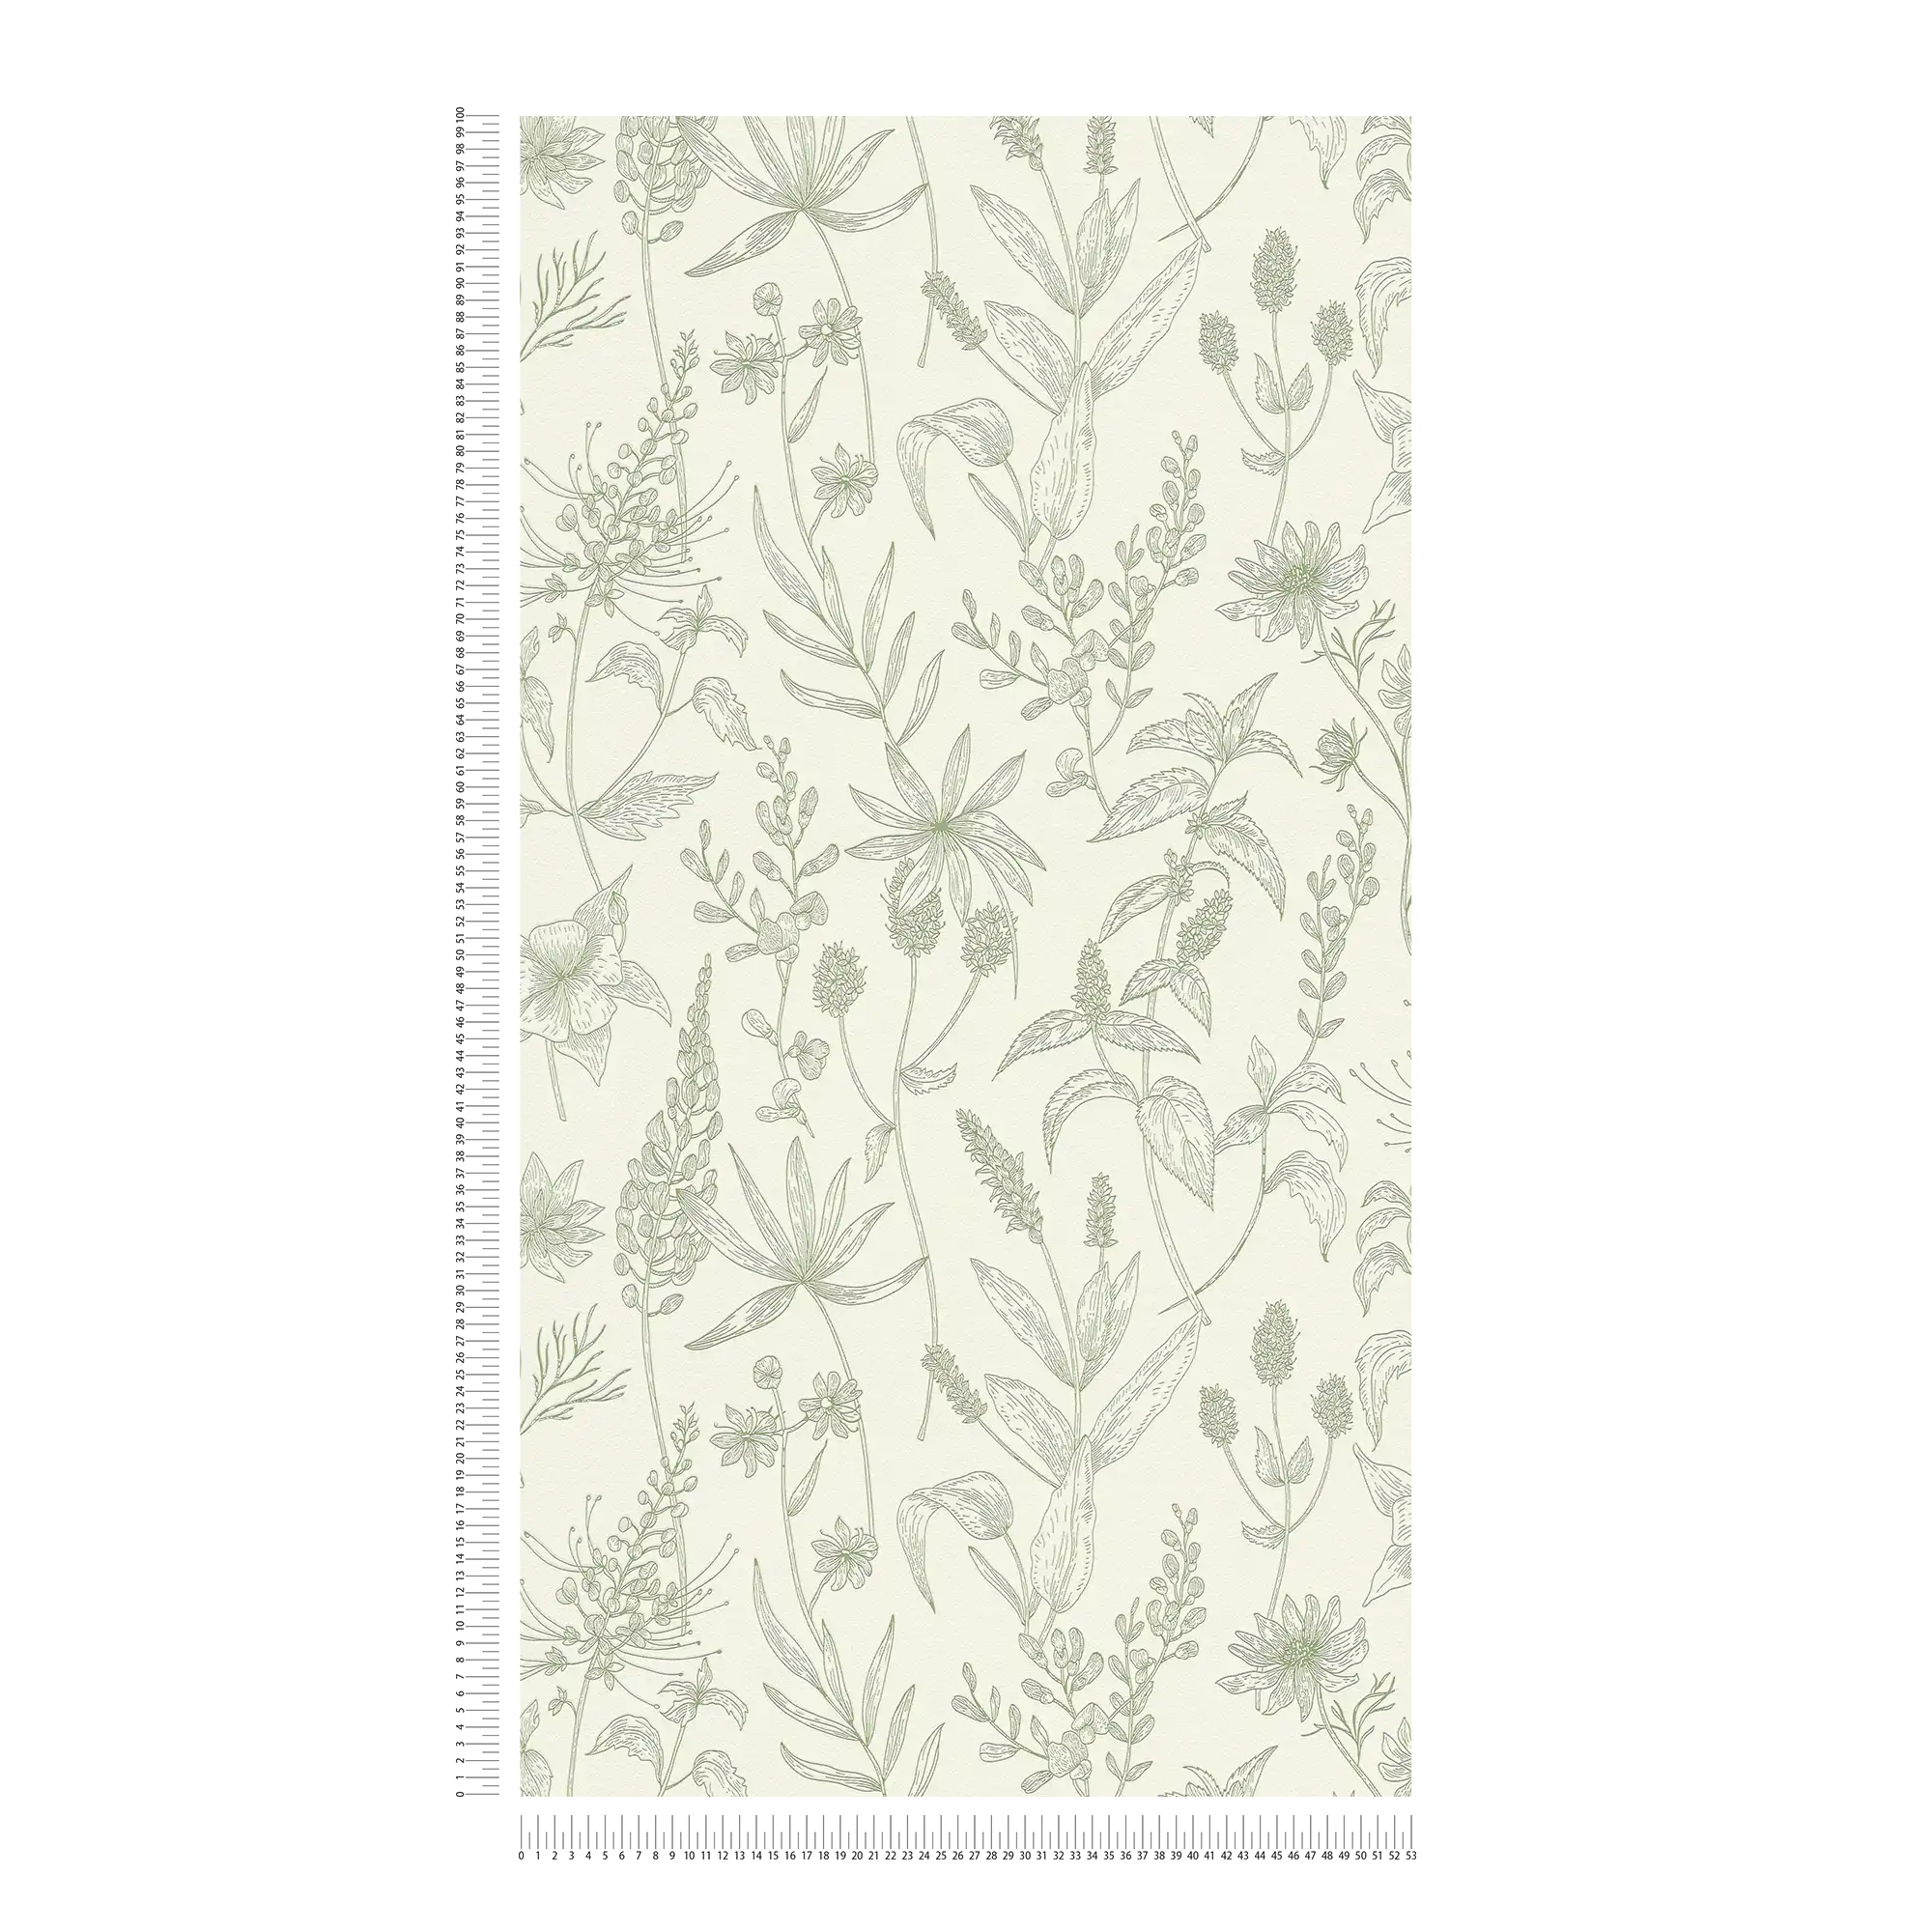             Vliesbehang met bloemenpatroon en metallic accent - groen, zilver, wit
        